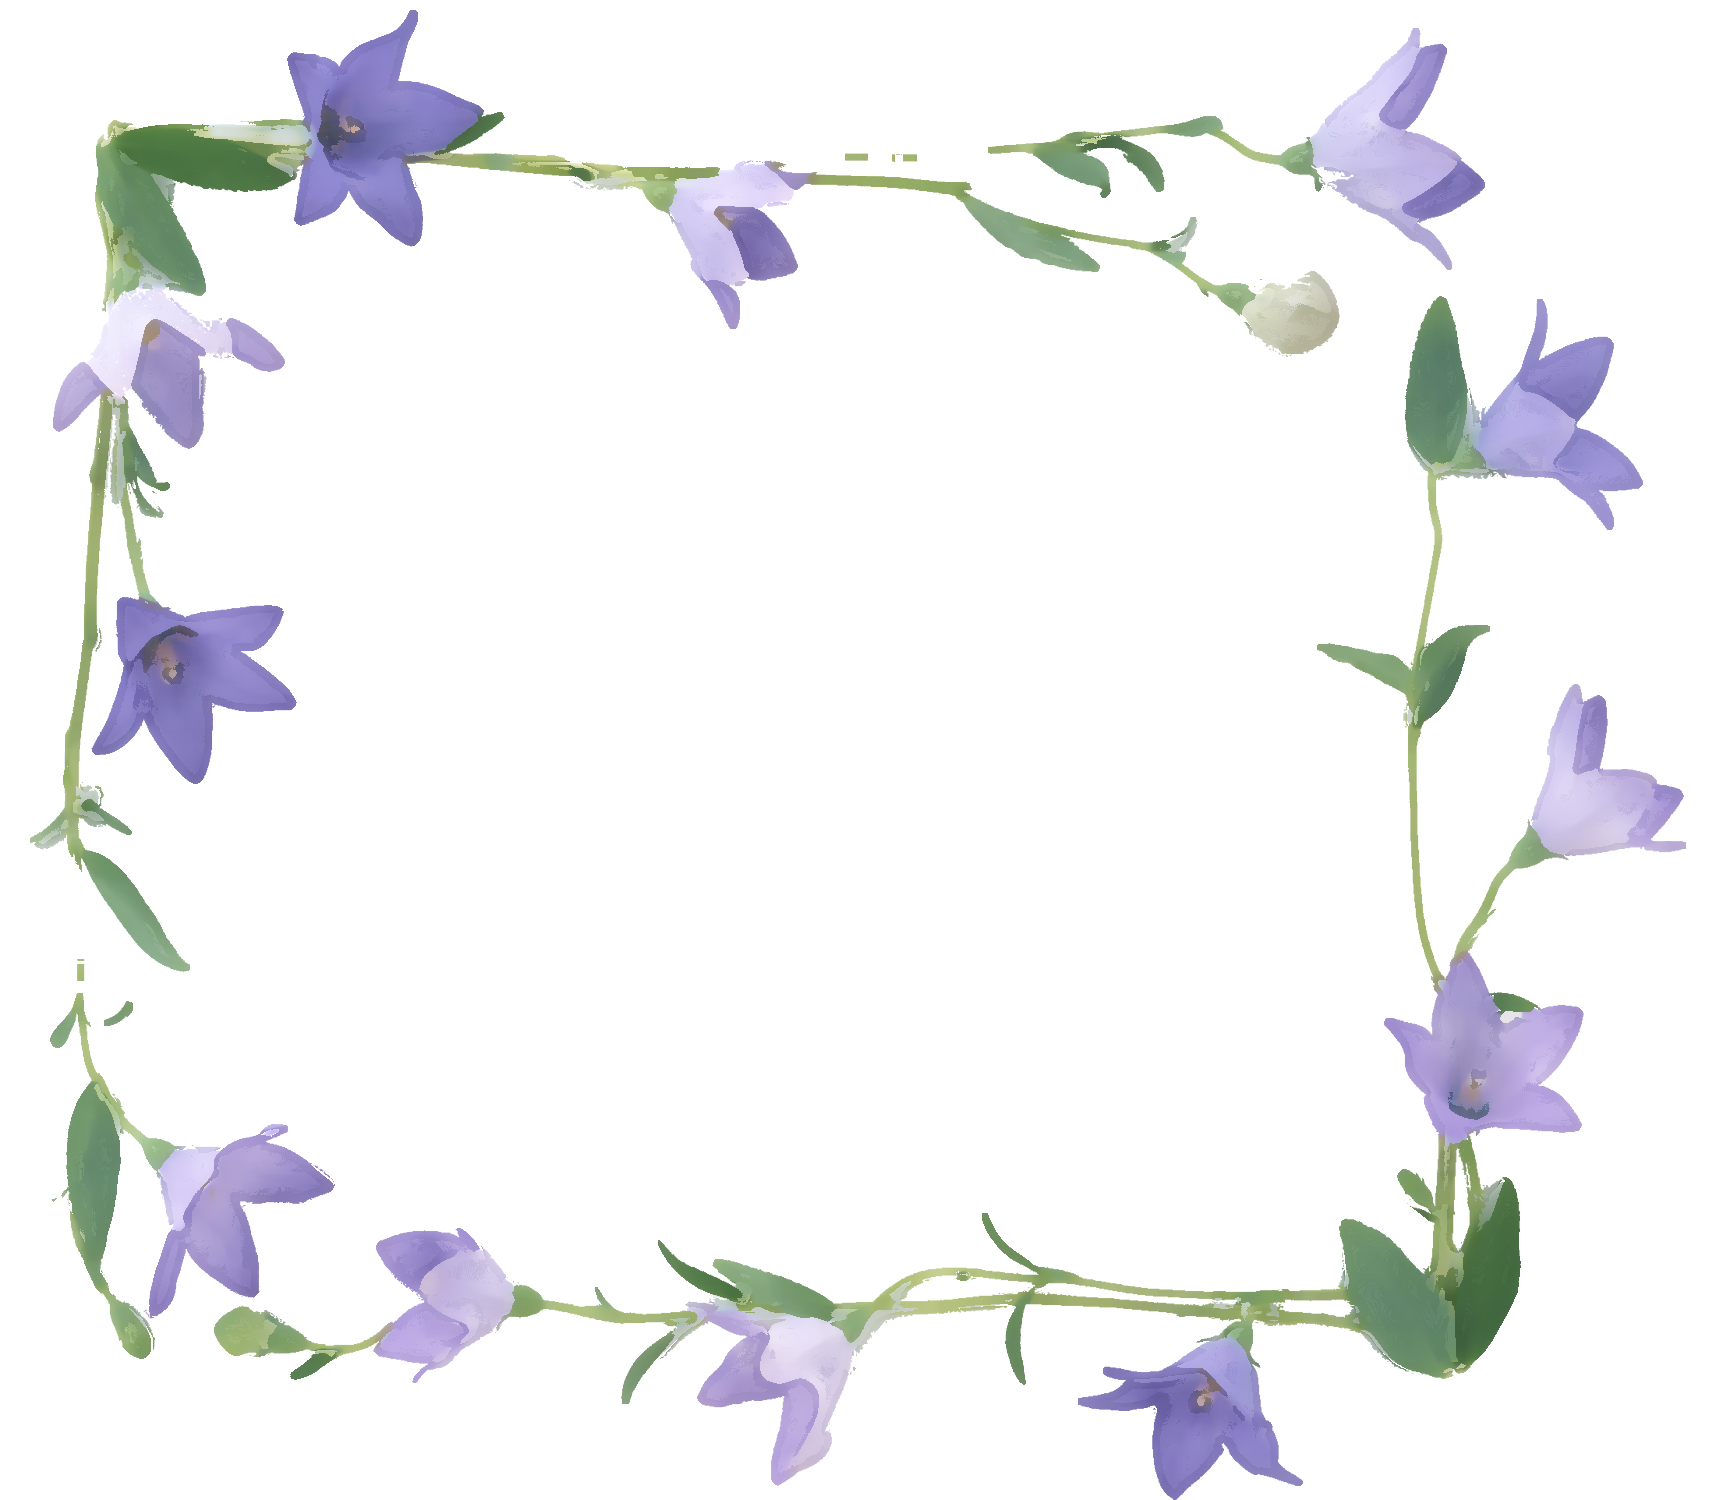 リアルな花のイラスト フリー素材 フレーム枠no 1304 紫 桔梗 りんどう 葉